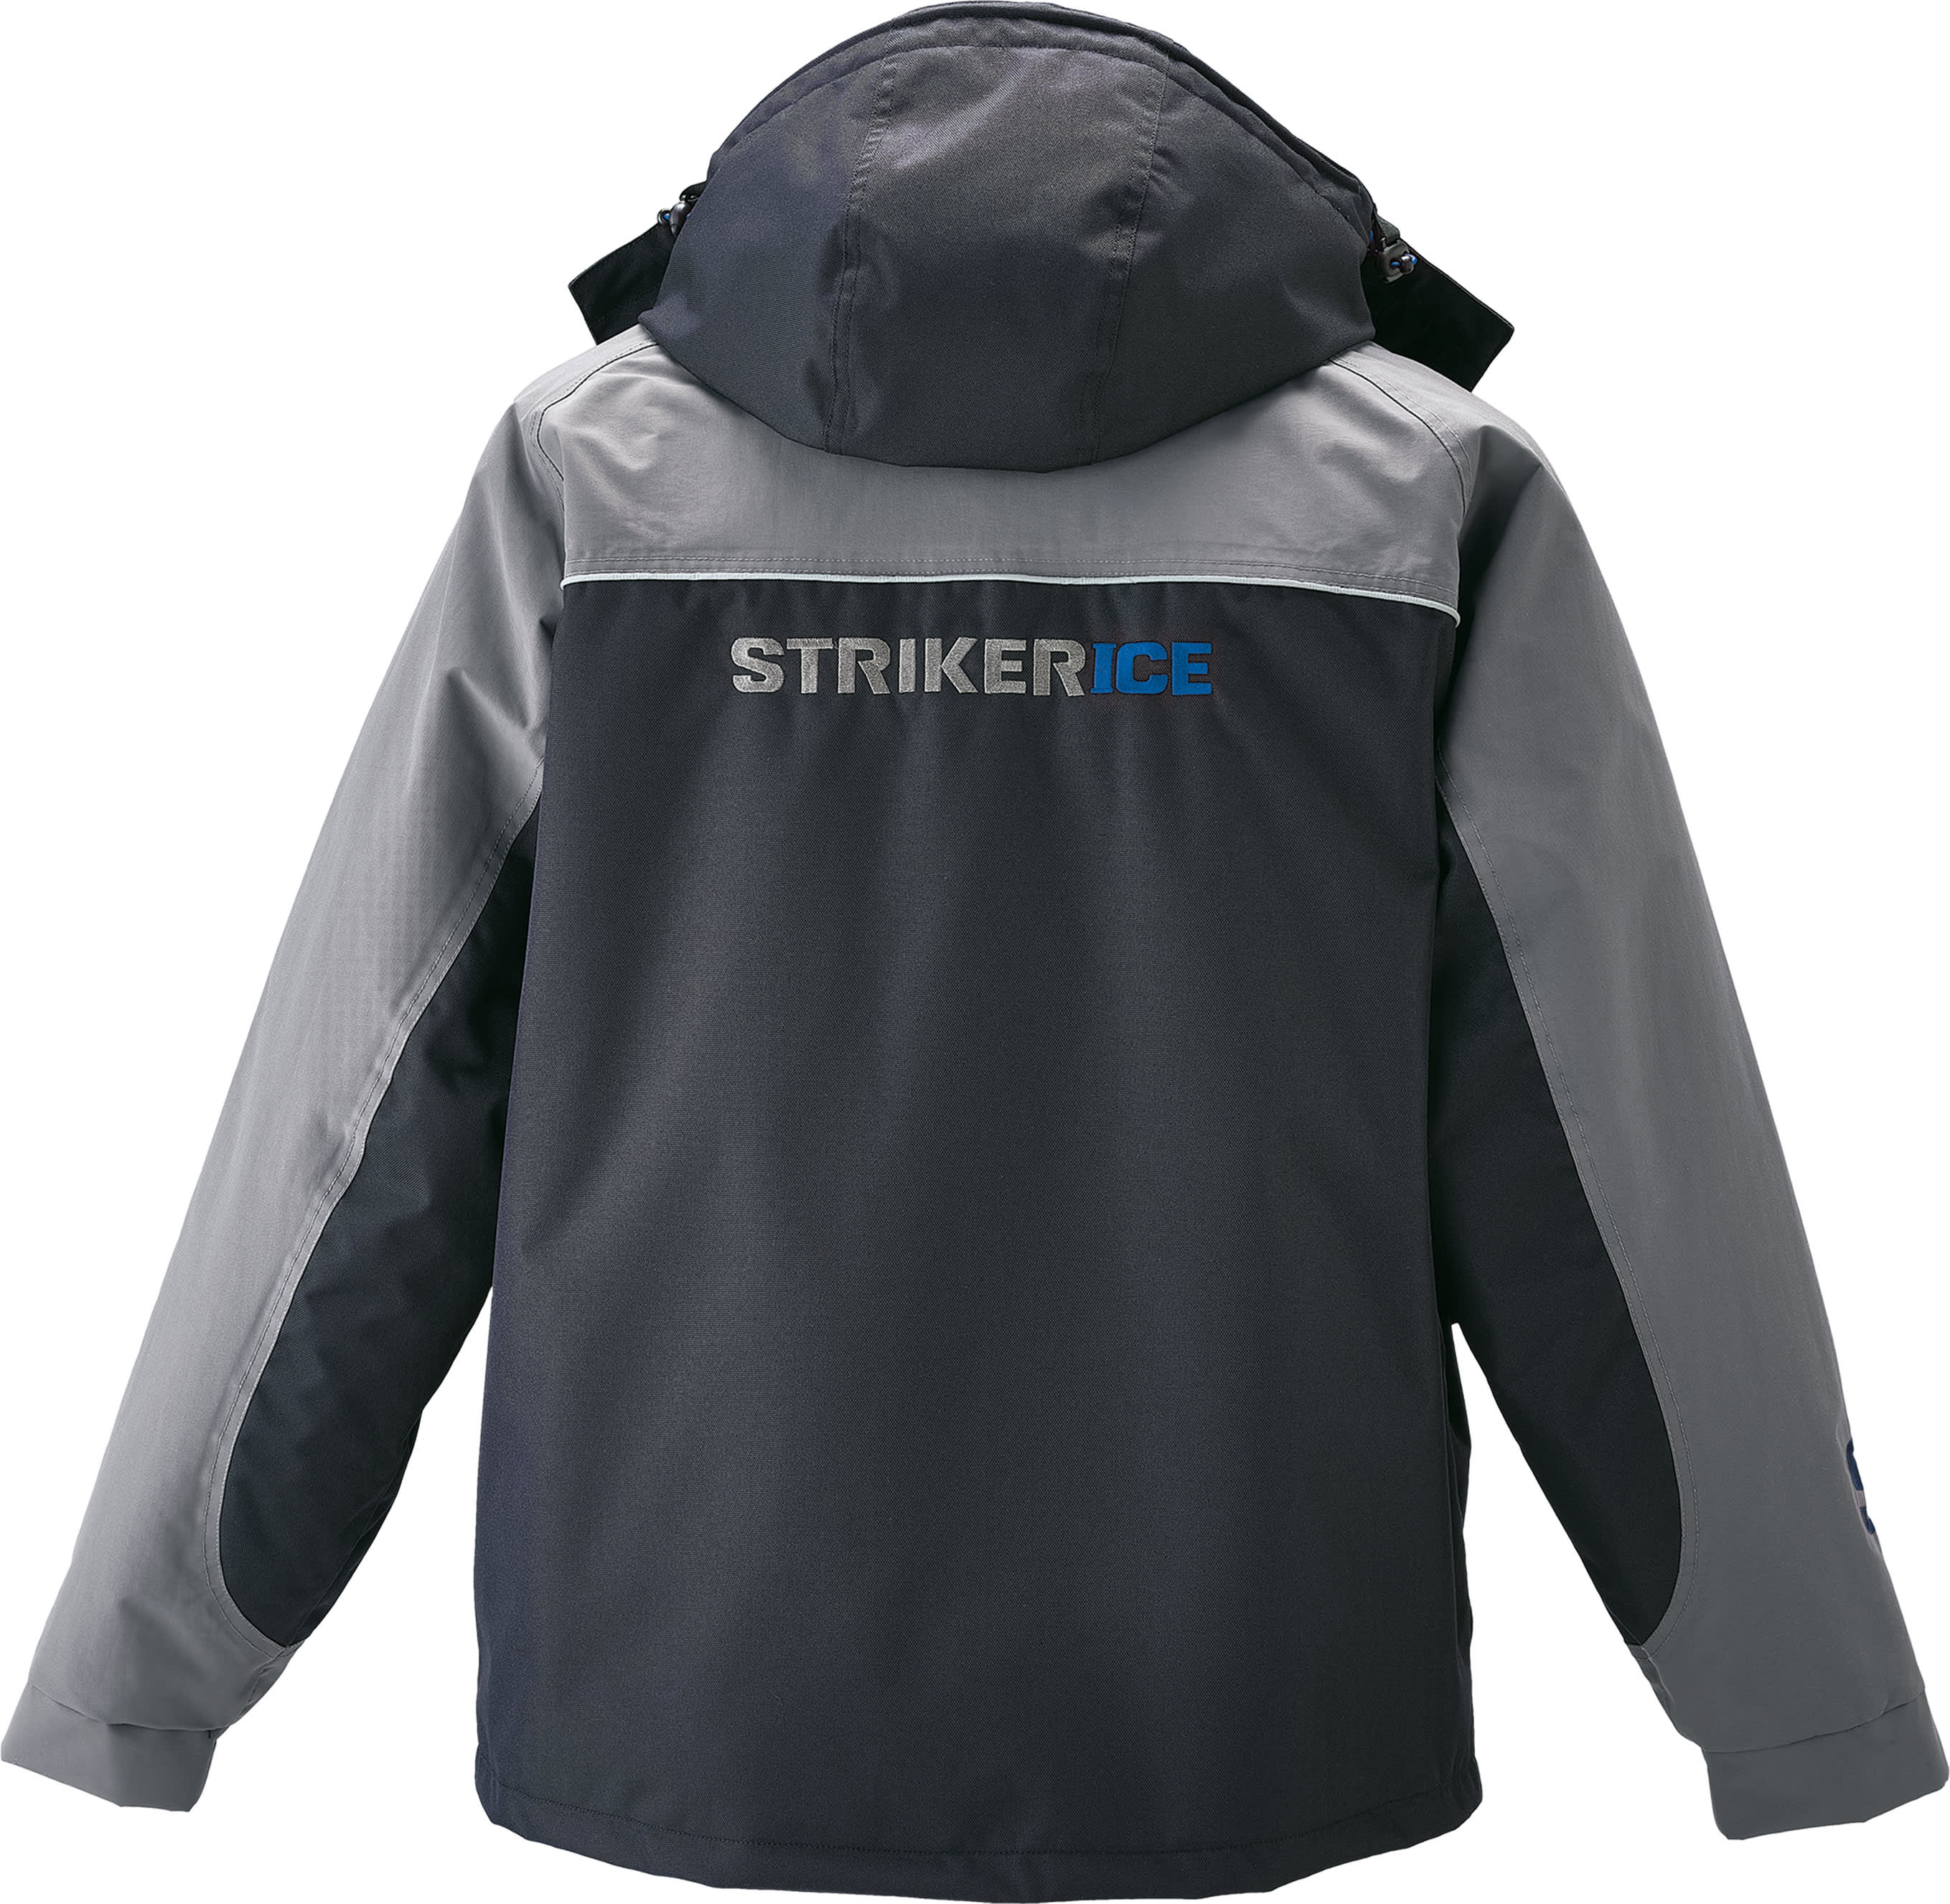 Striker® Men’s Trekker Jacket - back,Striker® Men’s Trekker Jacket - back,Striker® Men’s Trekker Jacket - back,Striker® Men’s Trekker Jacket - back